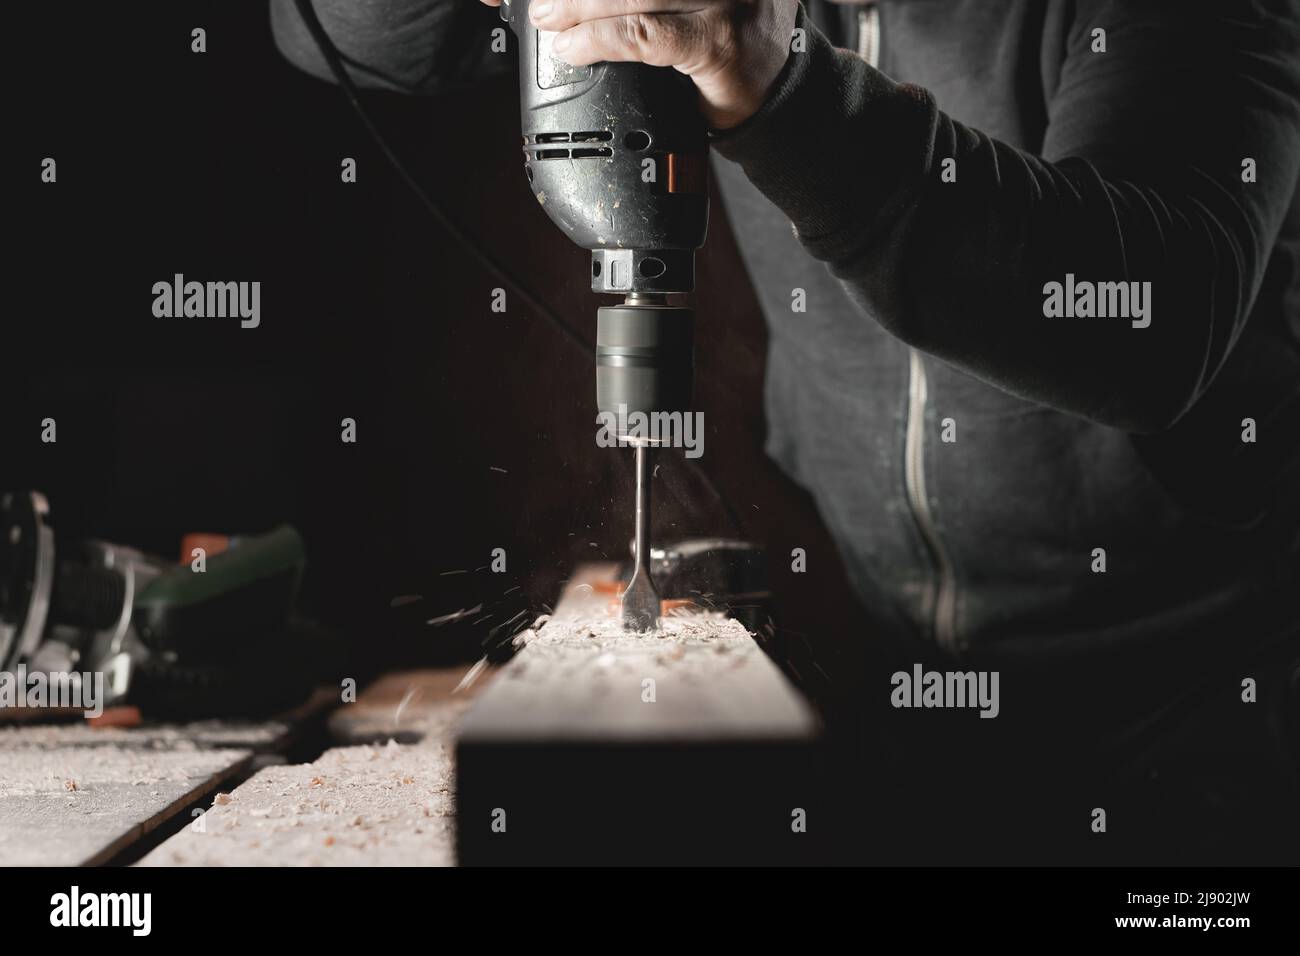 Ein Mann arbeitet mit einer Bohrmaschine in seiner Werkstatt. Zimmermann bohrt mit einem Hand-Elektrowerkzeug in einem dunklen Raum mit gerichtetem Licht Stockfoto